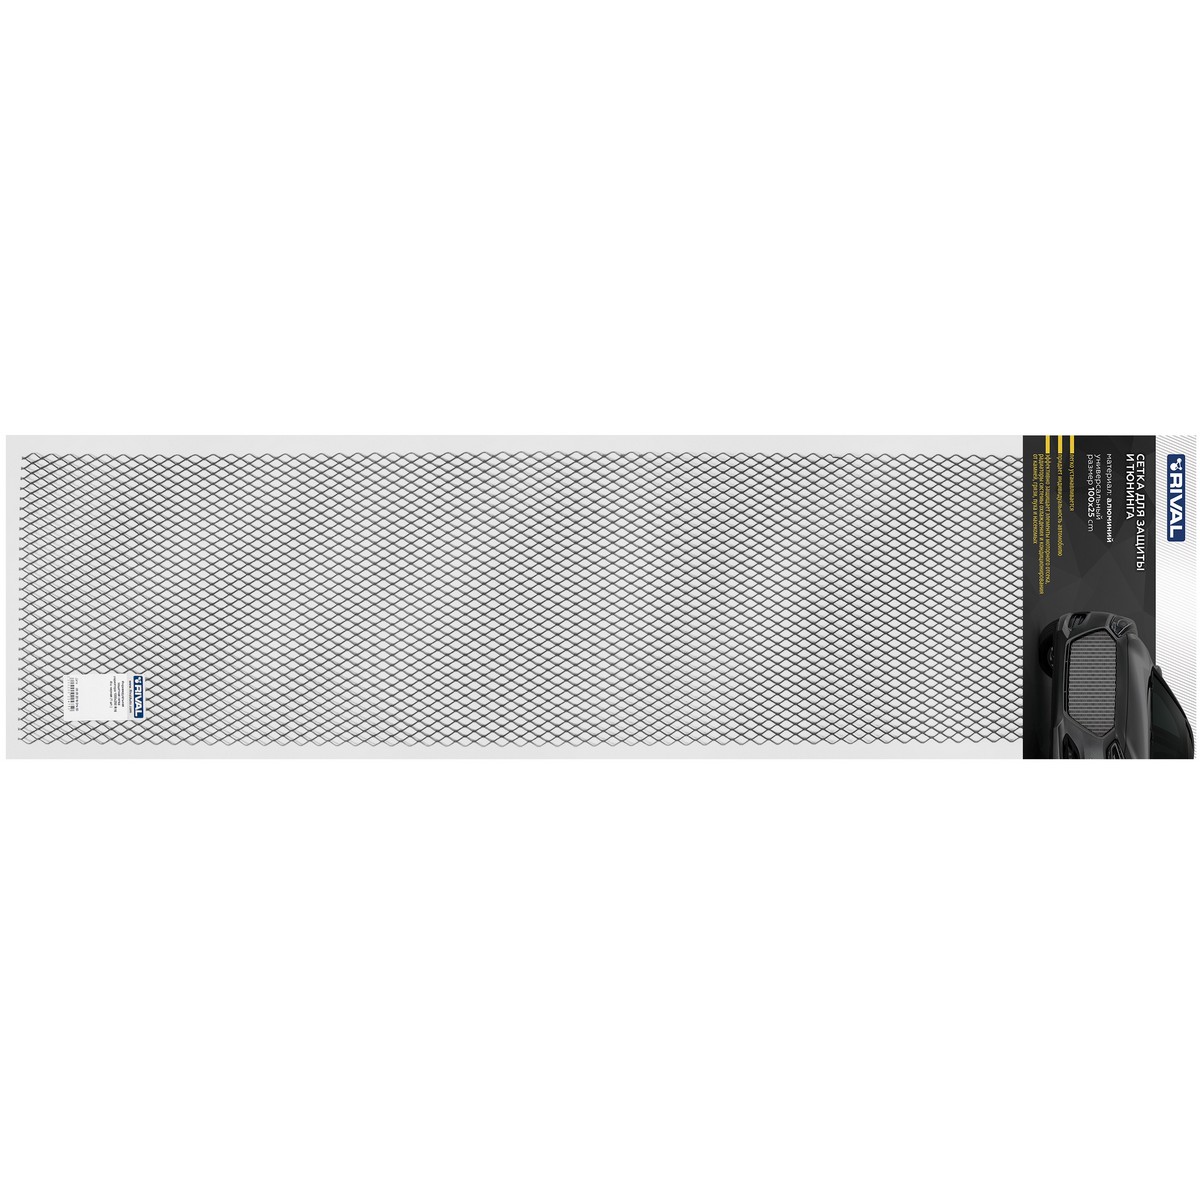 Универсальная сетка Rival 1000х250 R16 для защиты радиатора, черная, 1 шт. (индивидуальная упаковка), INDIV.ZS.1601.1